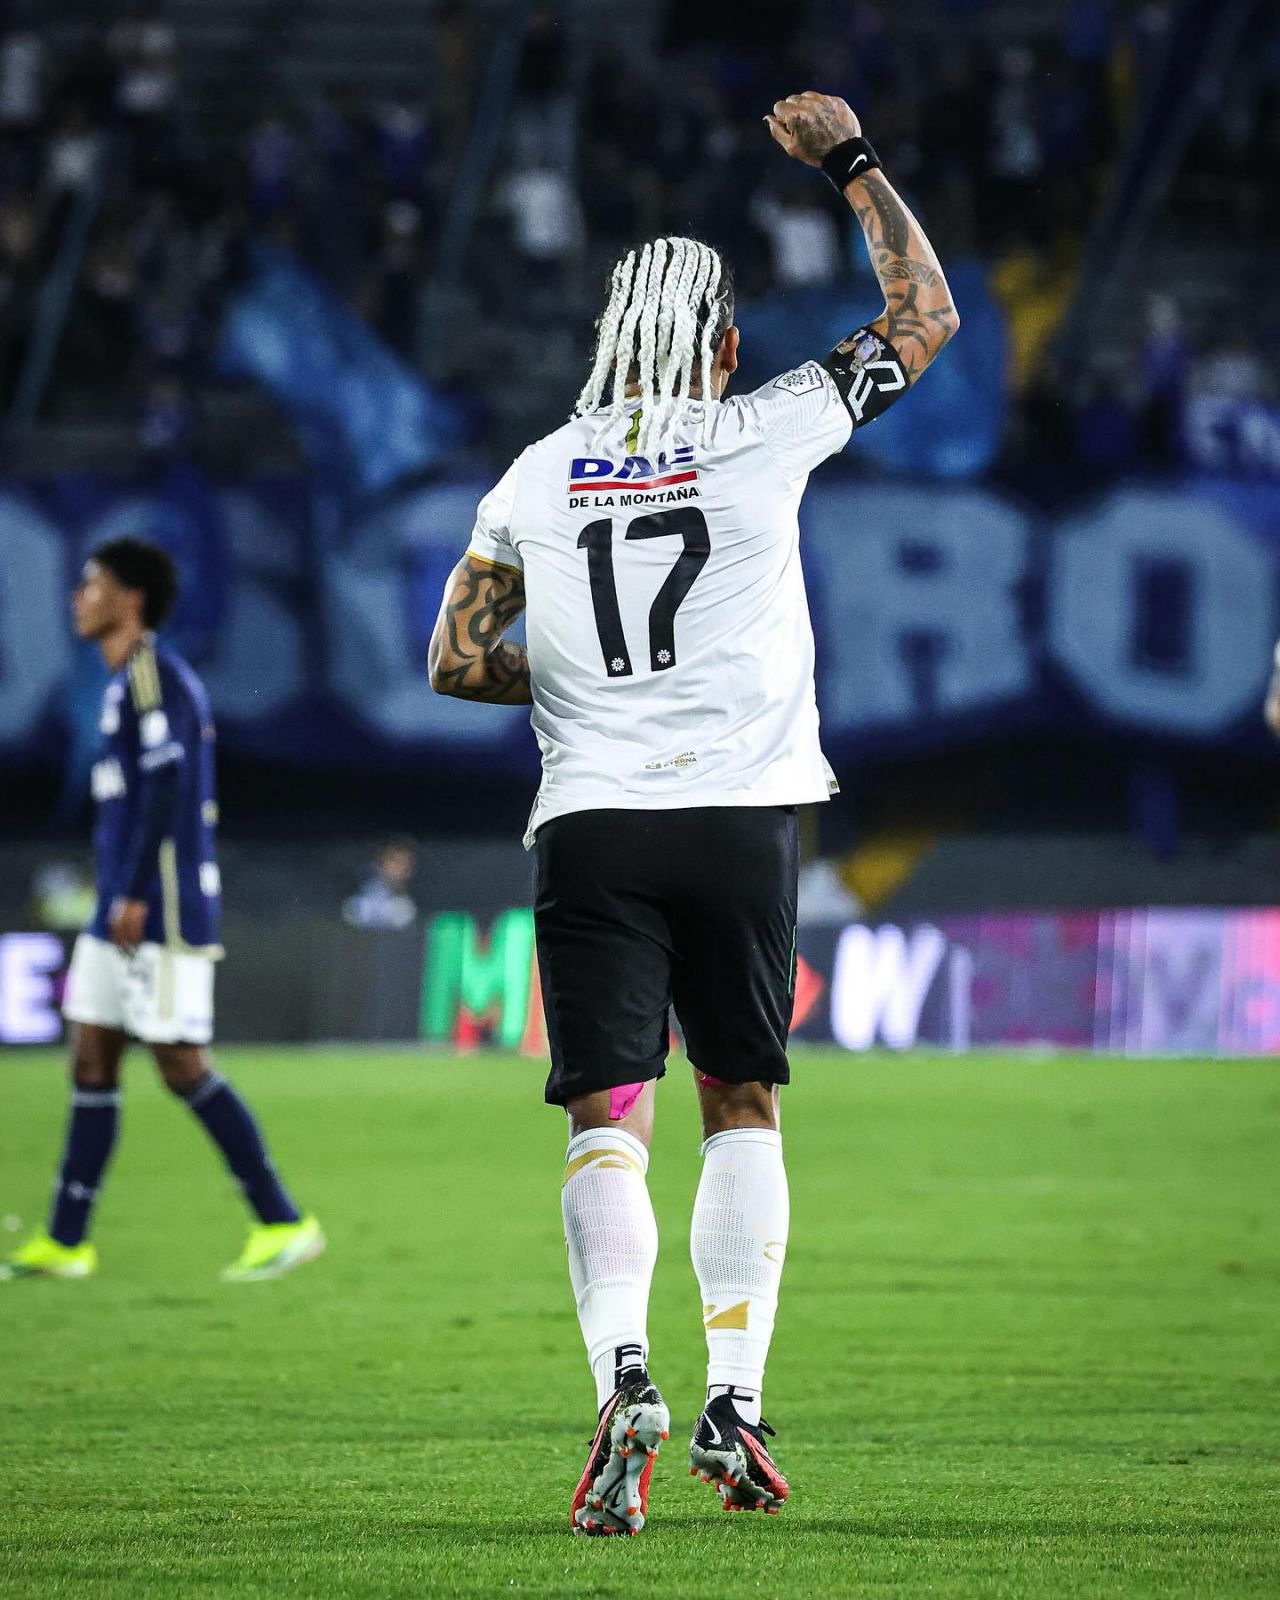 Dayro Moreno a devenit golgheterul numărul 1 din istoria Columbiei! Foarfecă senzațională pentru fostul vârf de la Steaua numit acum ”San Dayro” și ”LegenDayro”_18